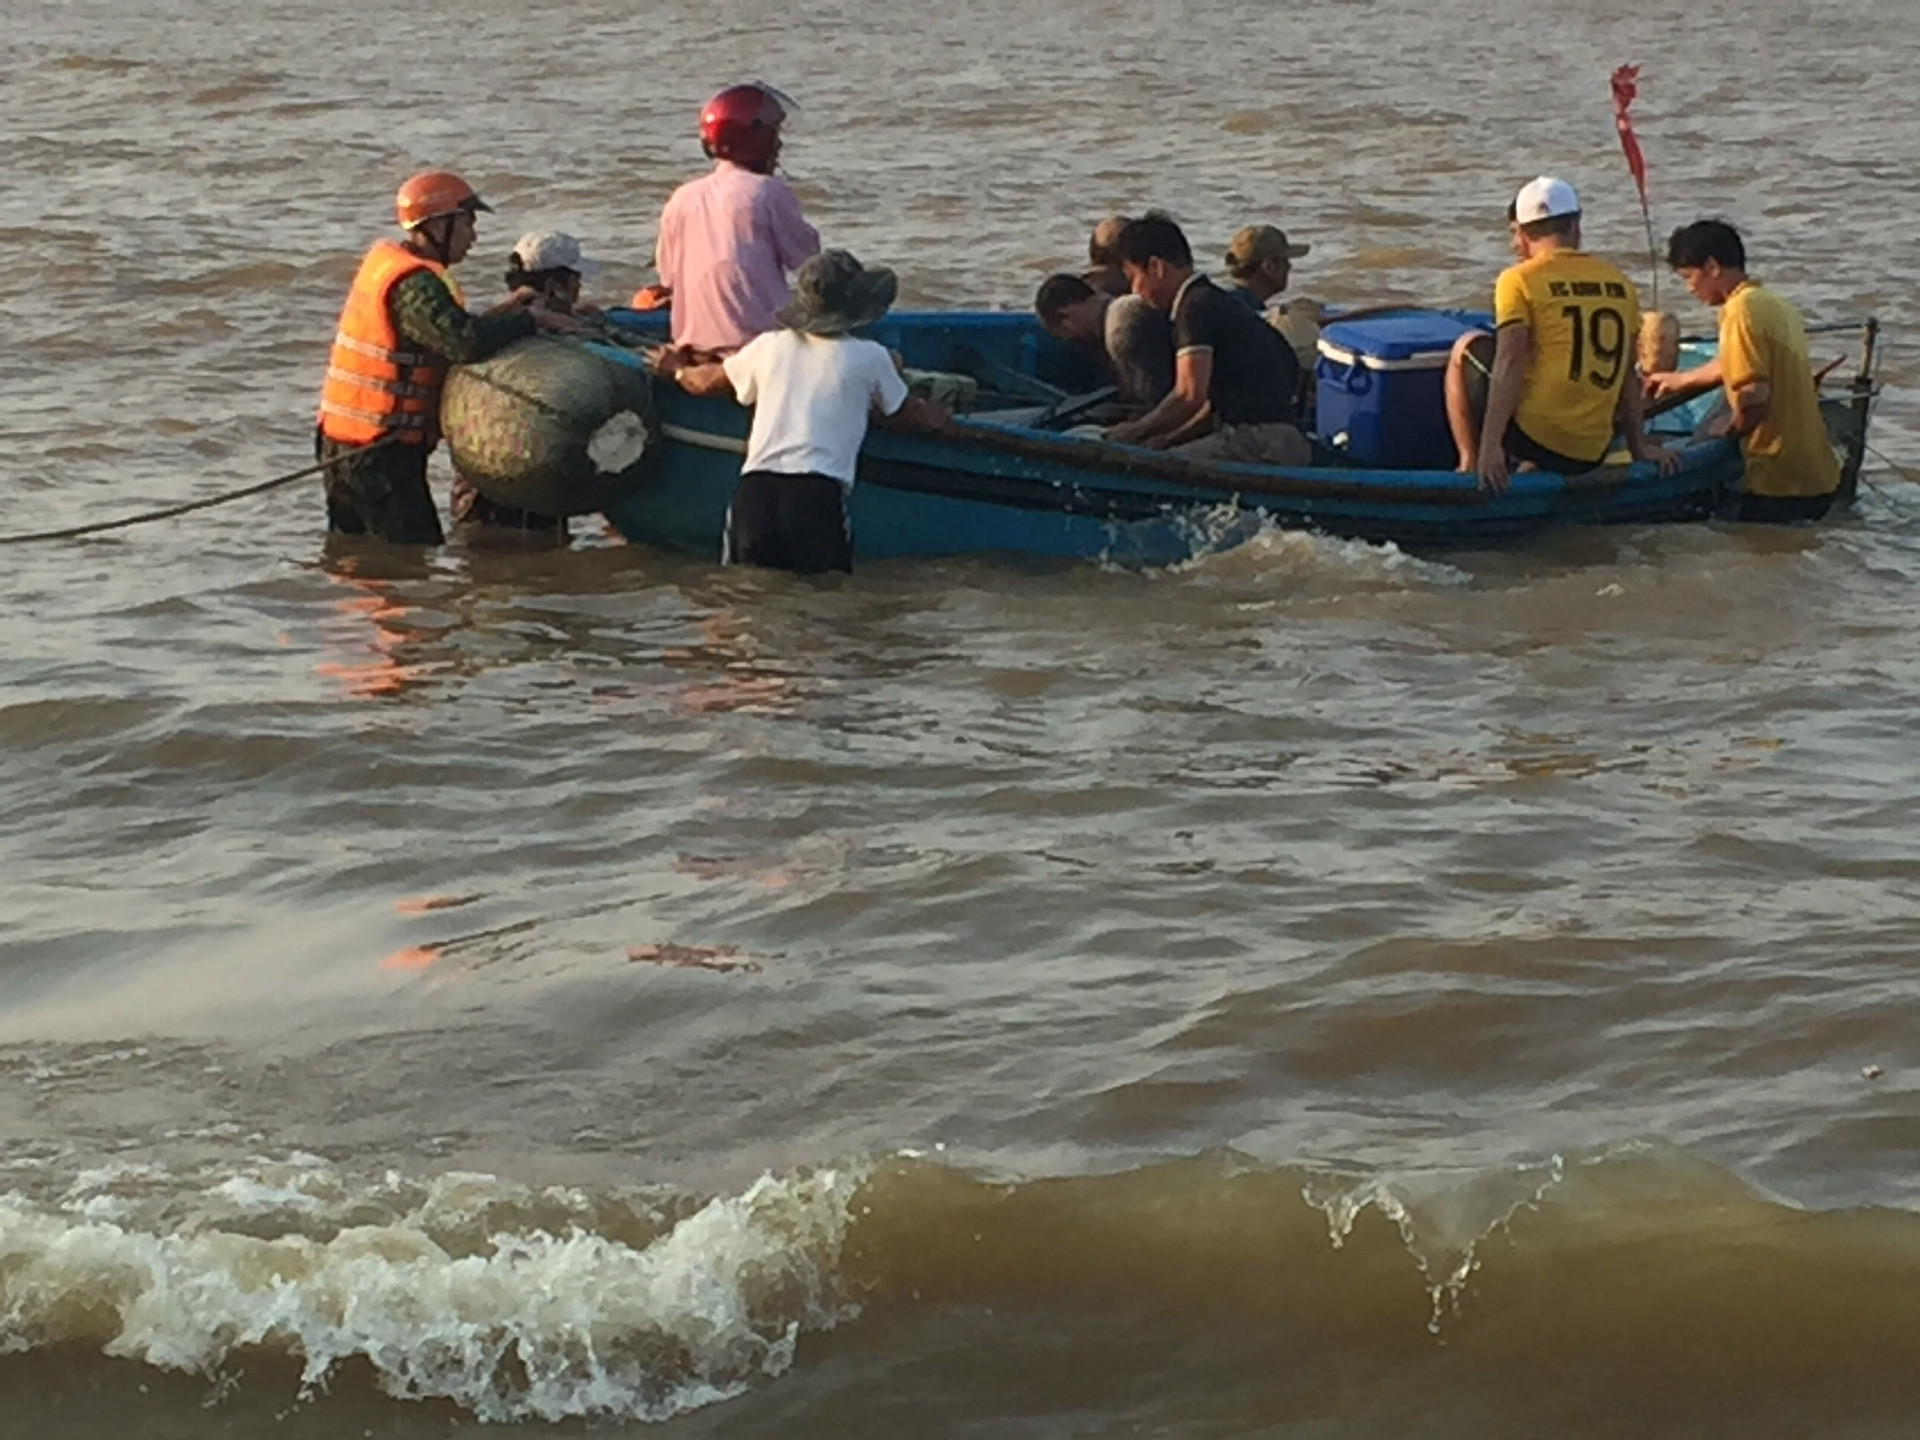 Lực lượng chức năng và ngư dân đã tham gia ứng cứu đưa người và phương tiện bị lật vào bờ an toàn.